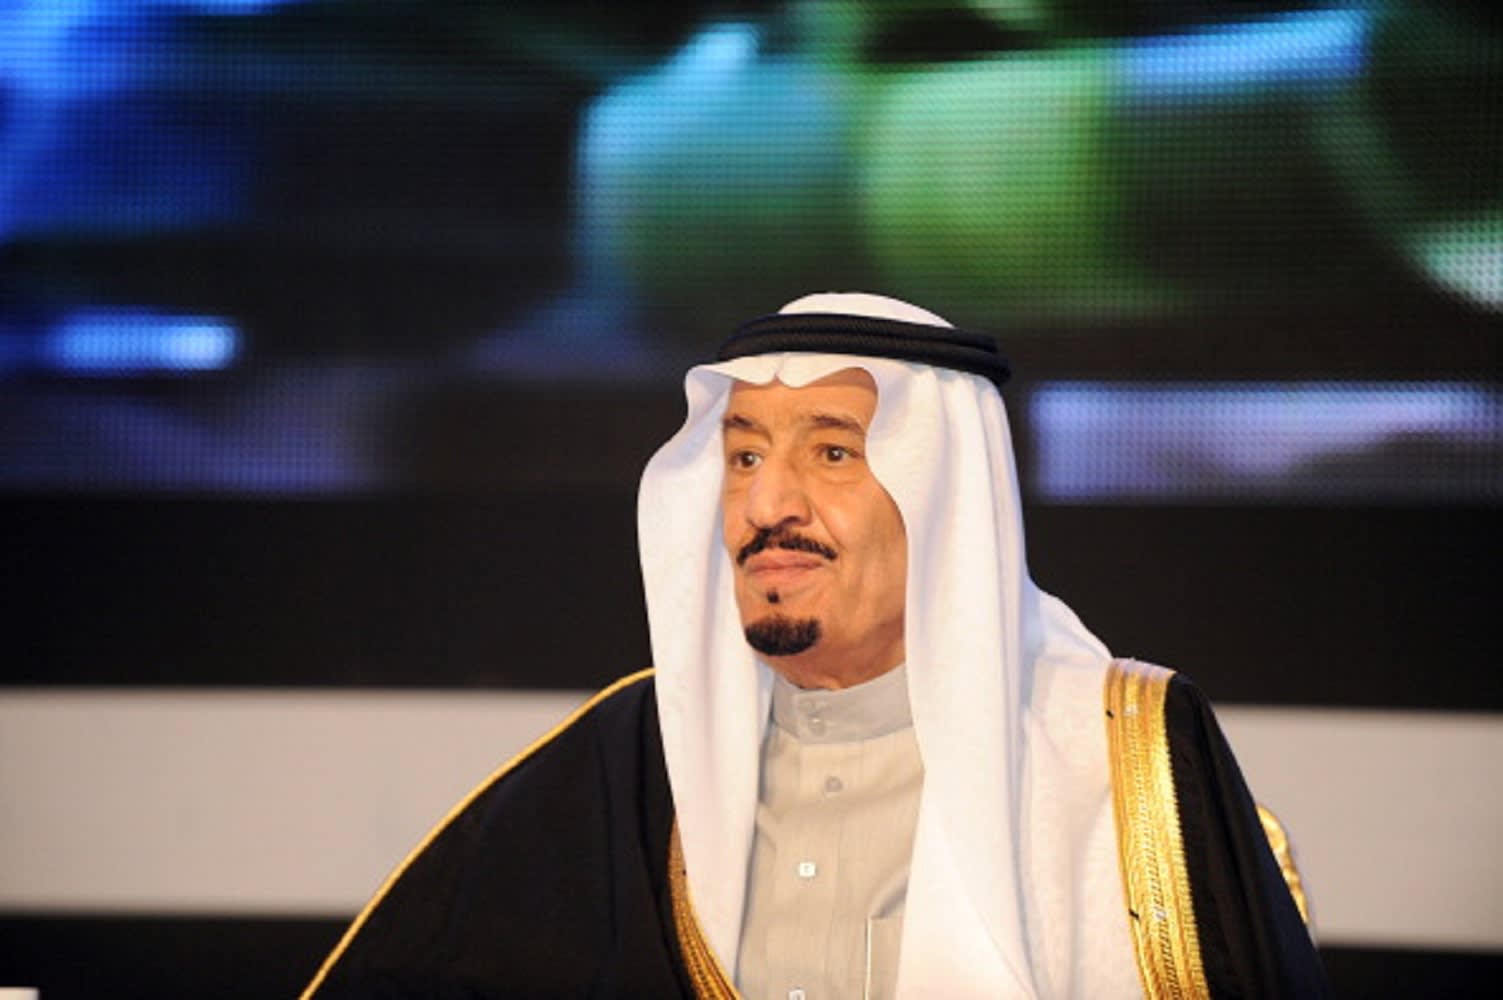 الملك سلمان: وقوفنا إلى جانب اليمن كان واجبا وندعم الحل السياسي